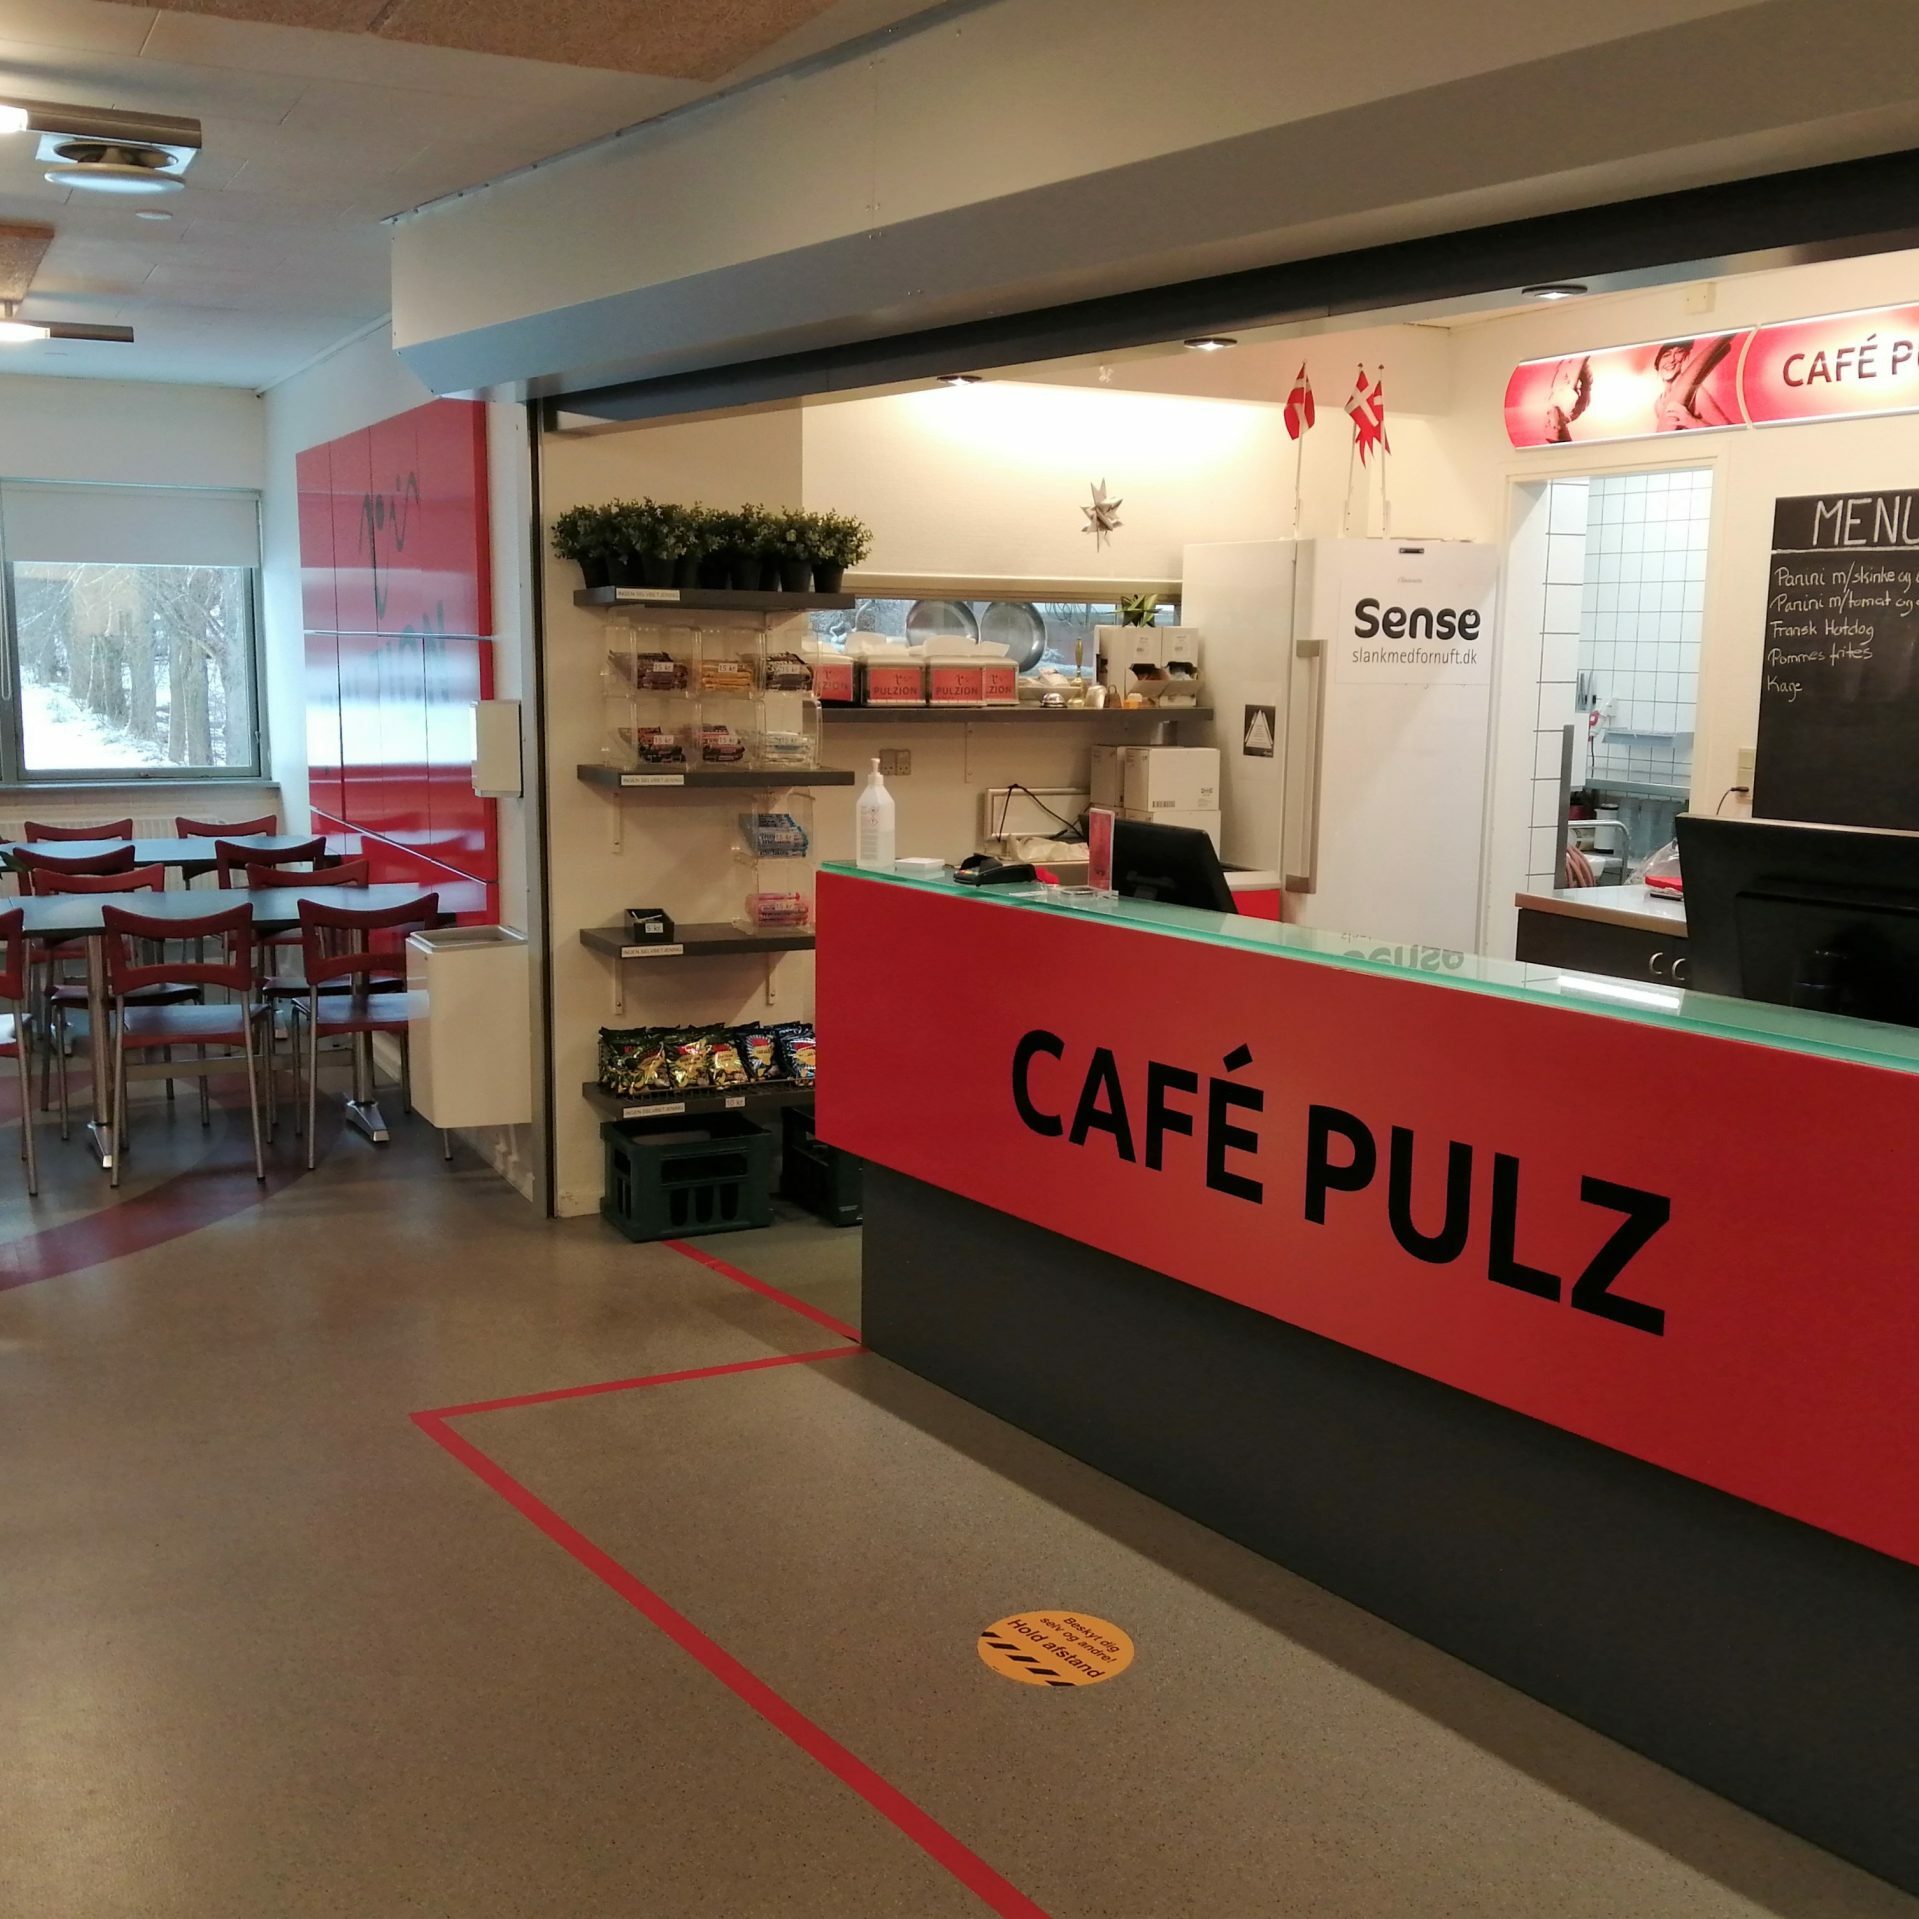 Besøg Café Pulz i Pulzion